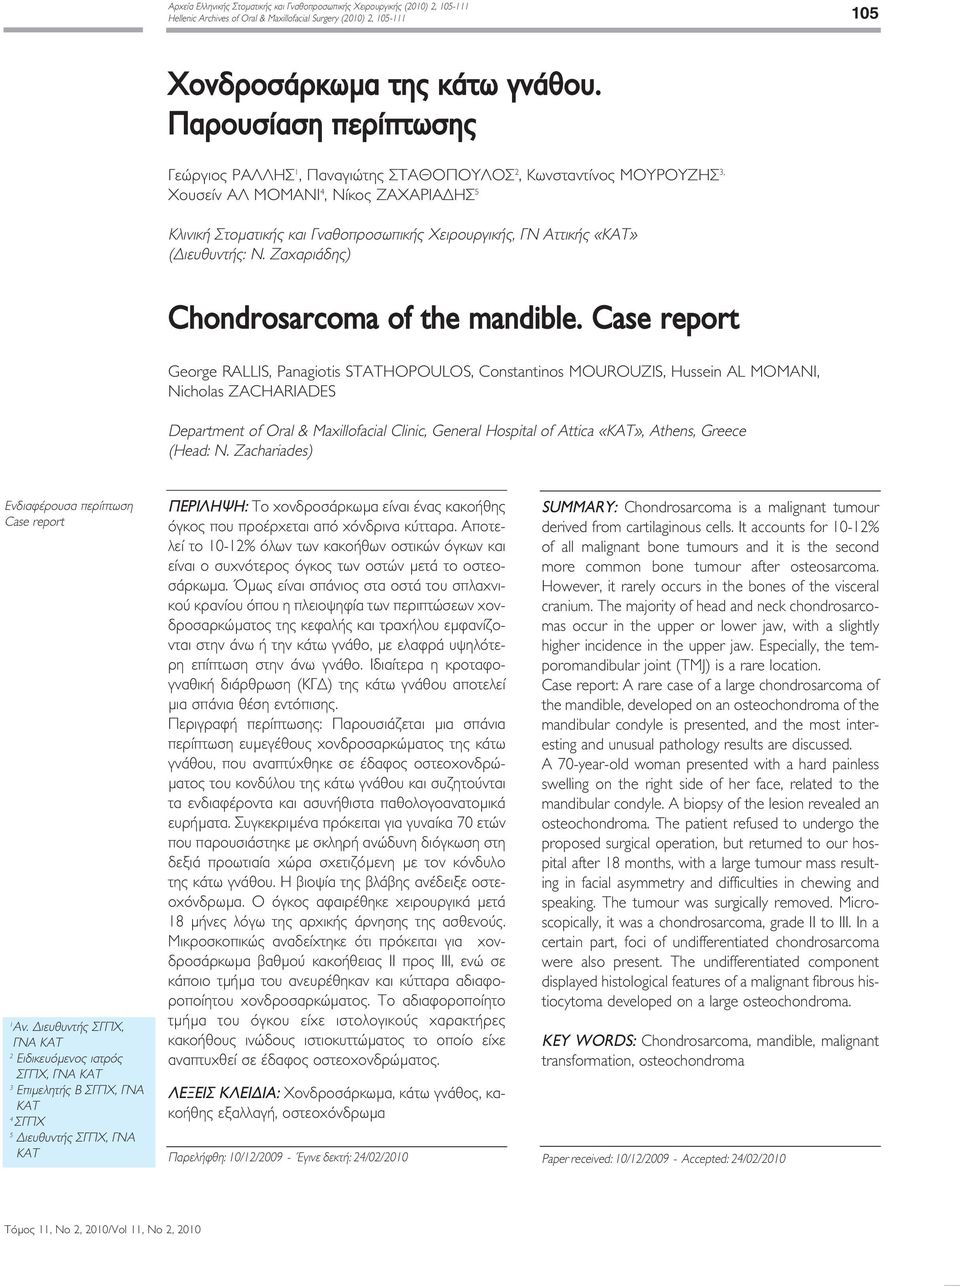 «ΚΑΤ» (Διευθυντής: Ν. Ζαχαριάδης) Chondrosarcoma of the mandible.